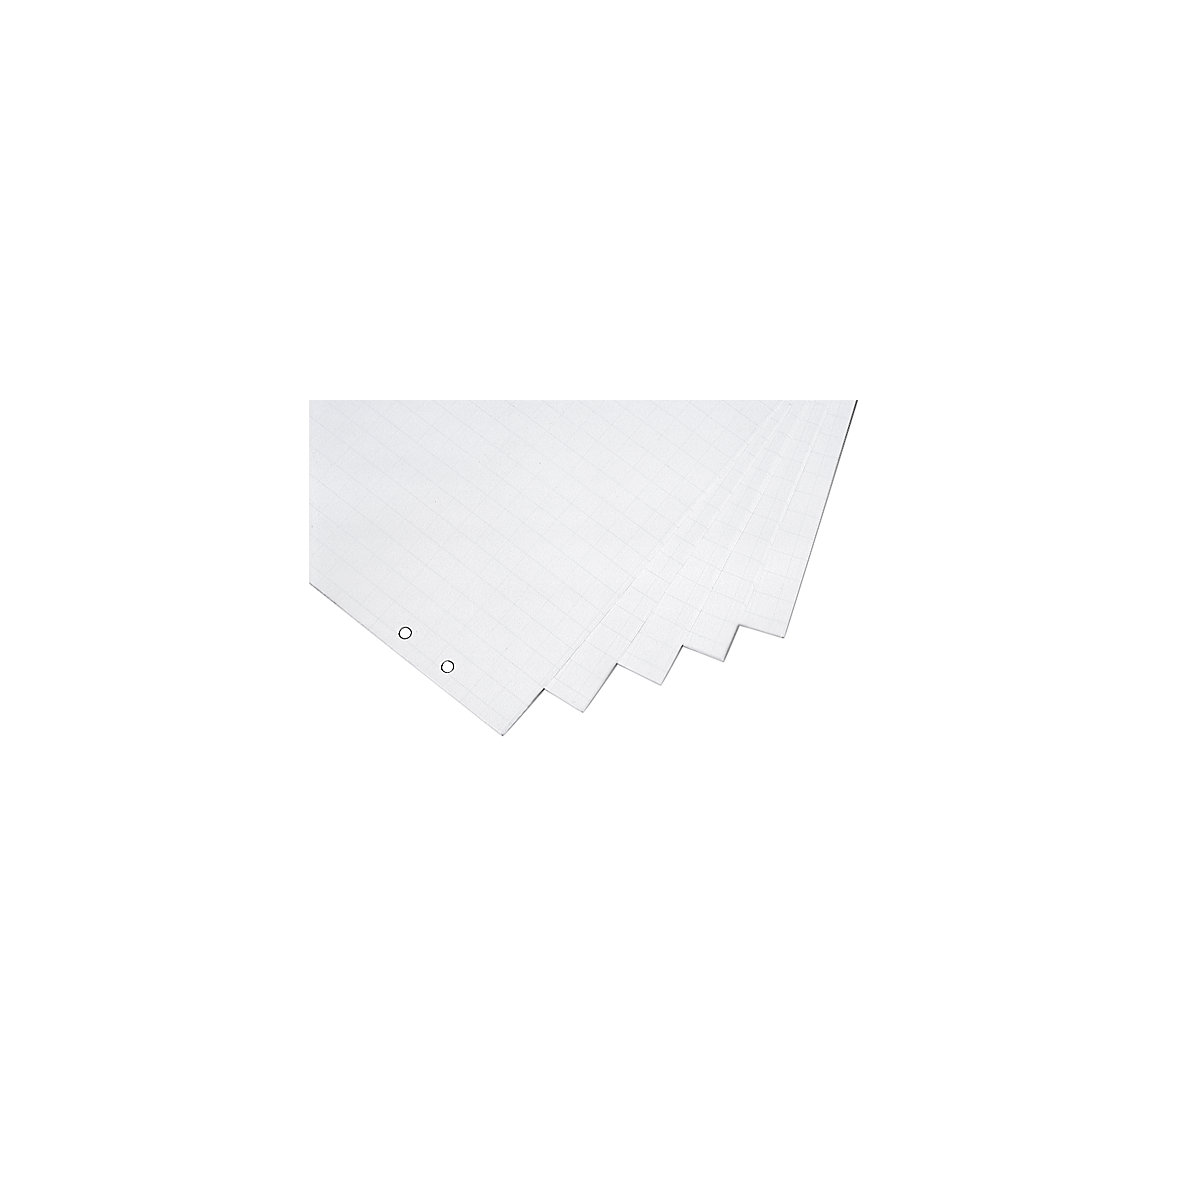 Flipchart Paper - 650 x 1,000 mm (W x H)